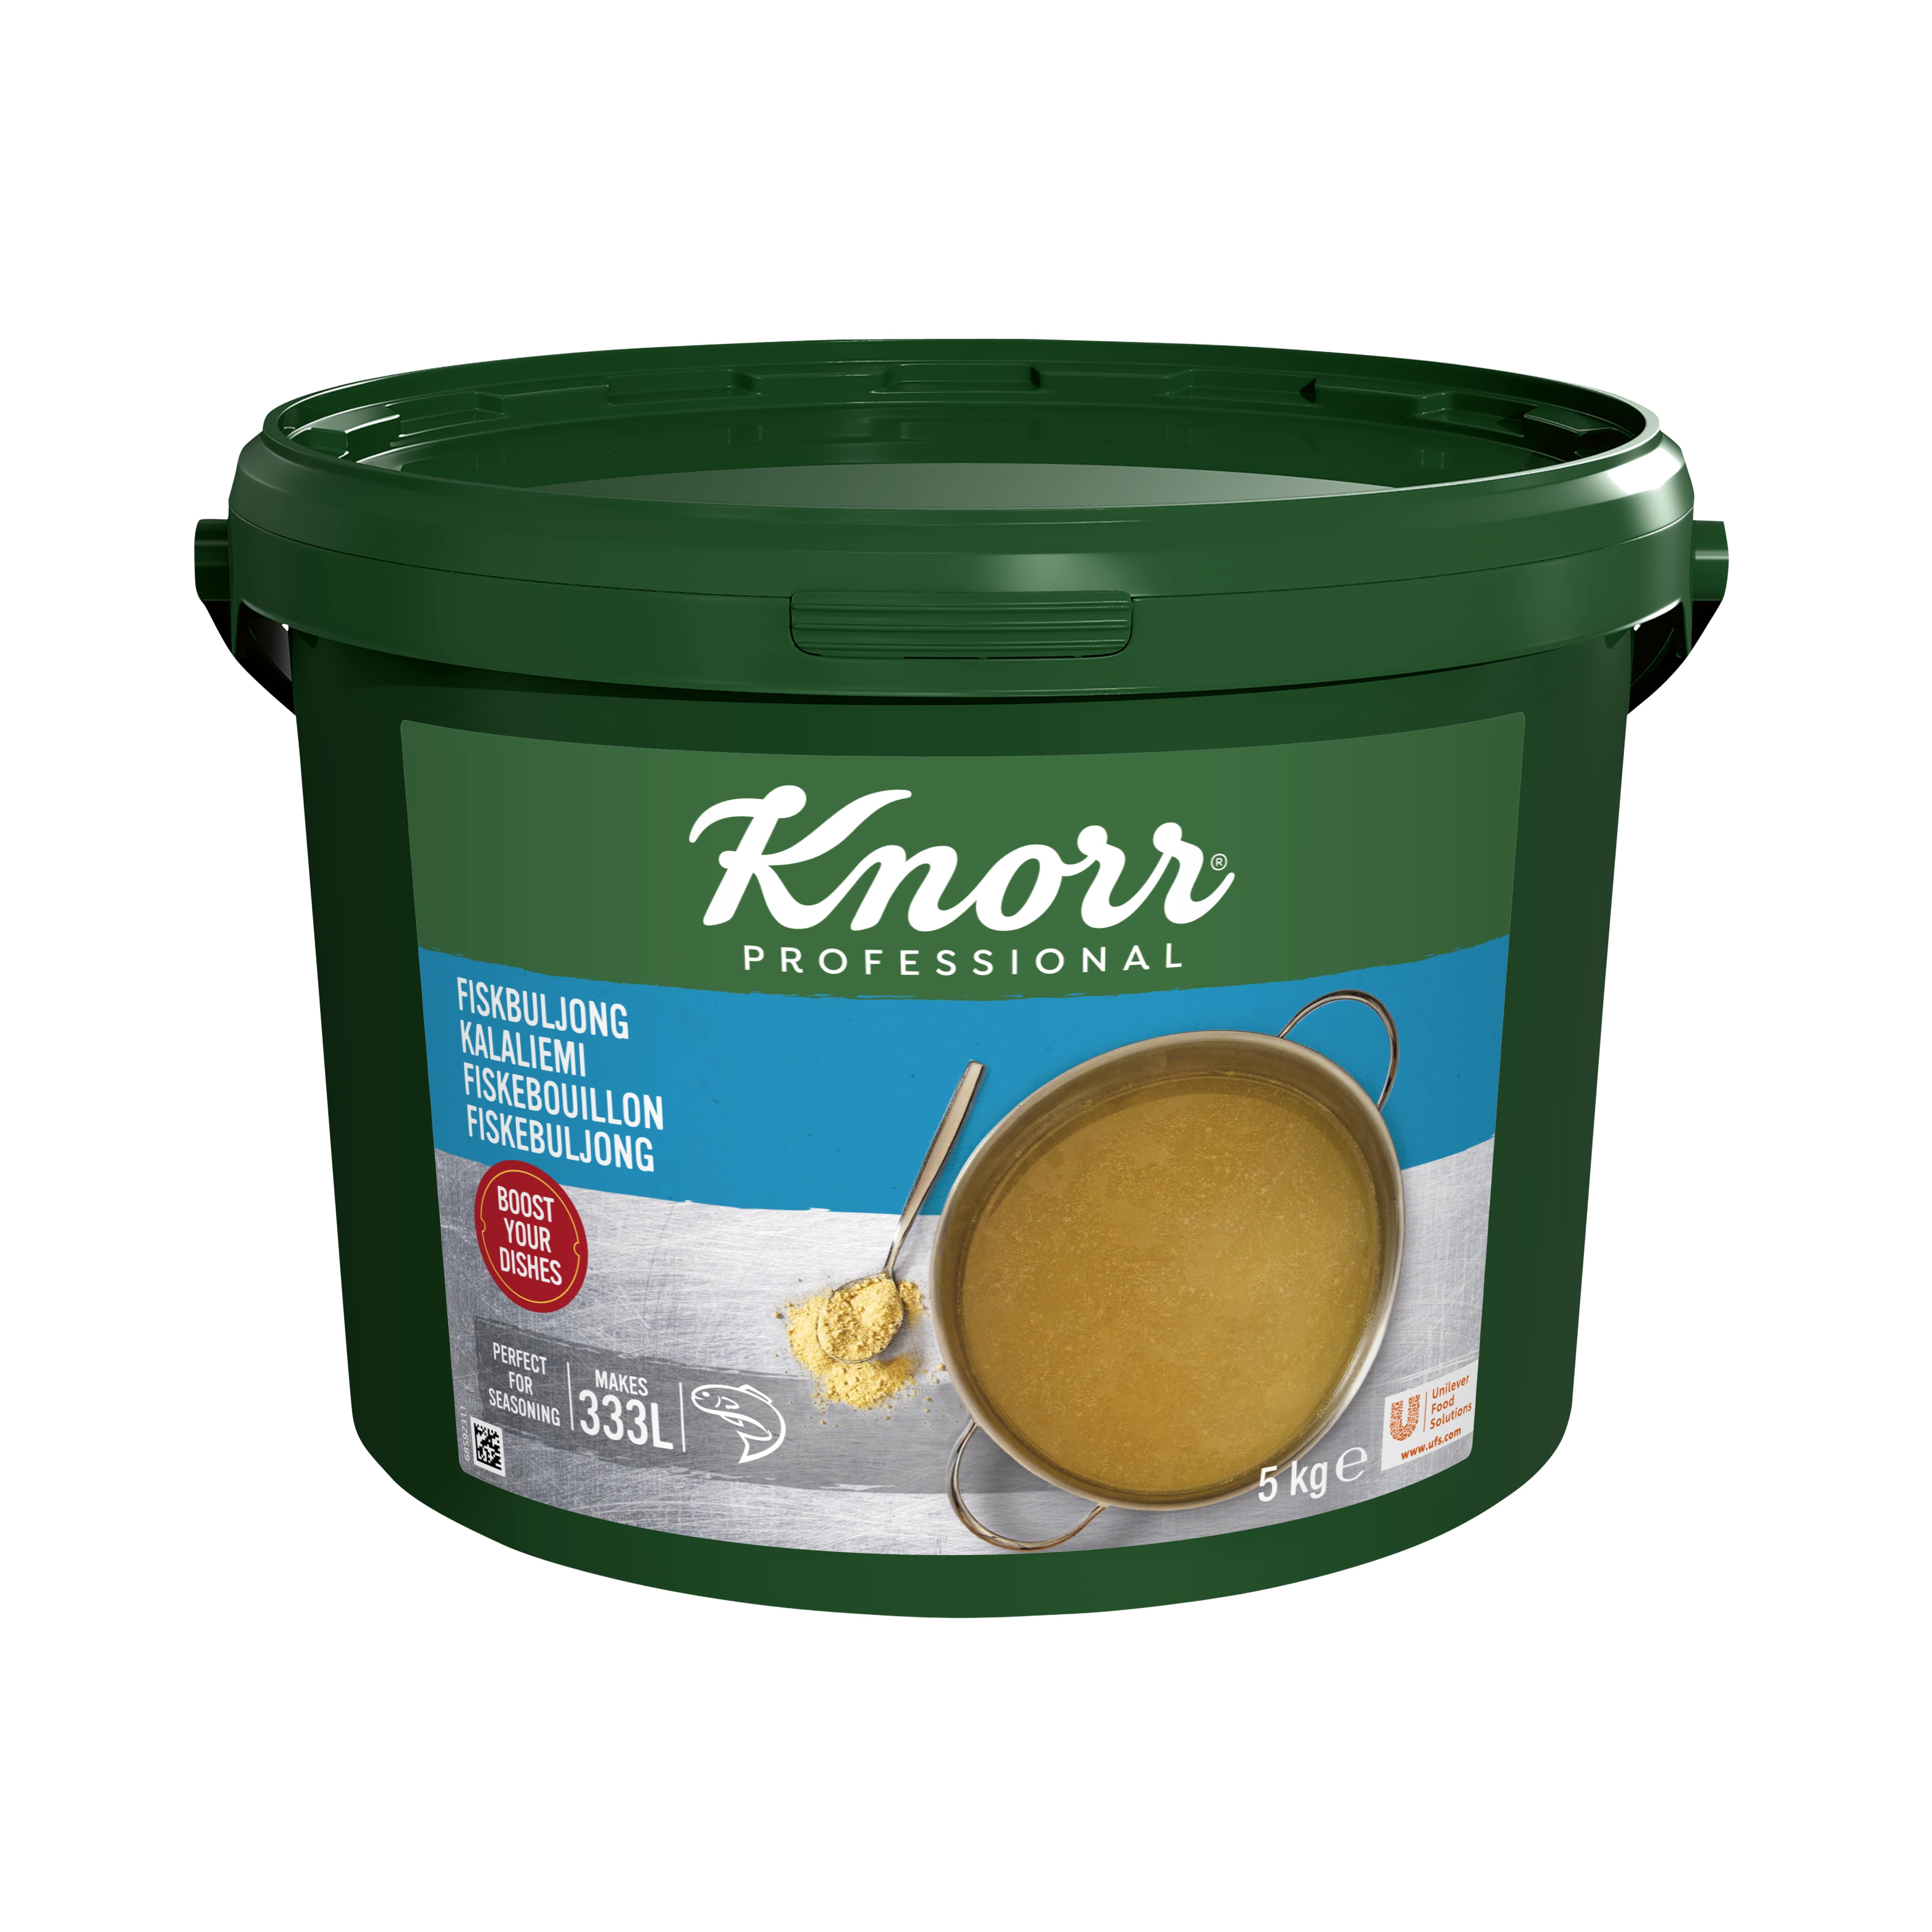 Knorr Kalaliemi 5 kg/333 L - 